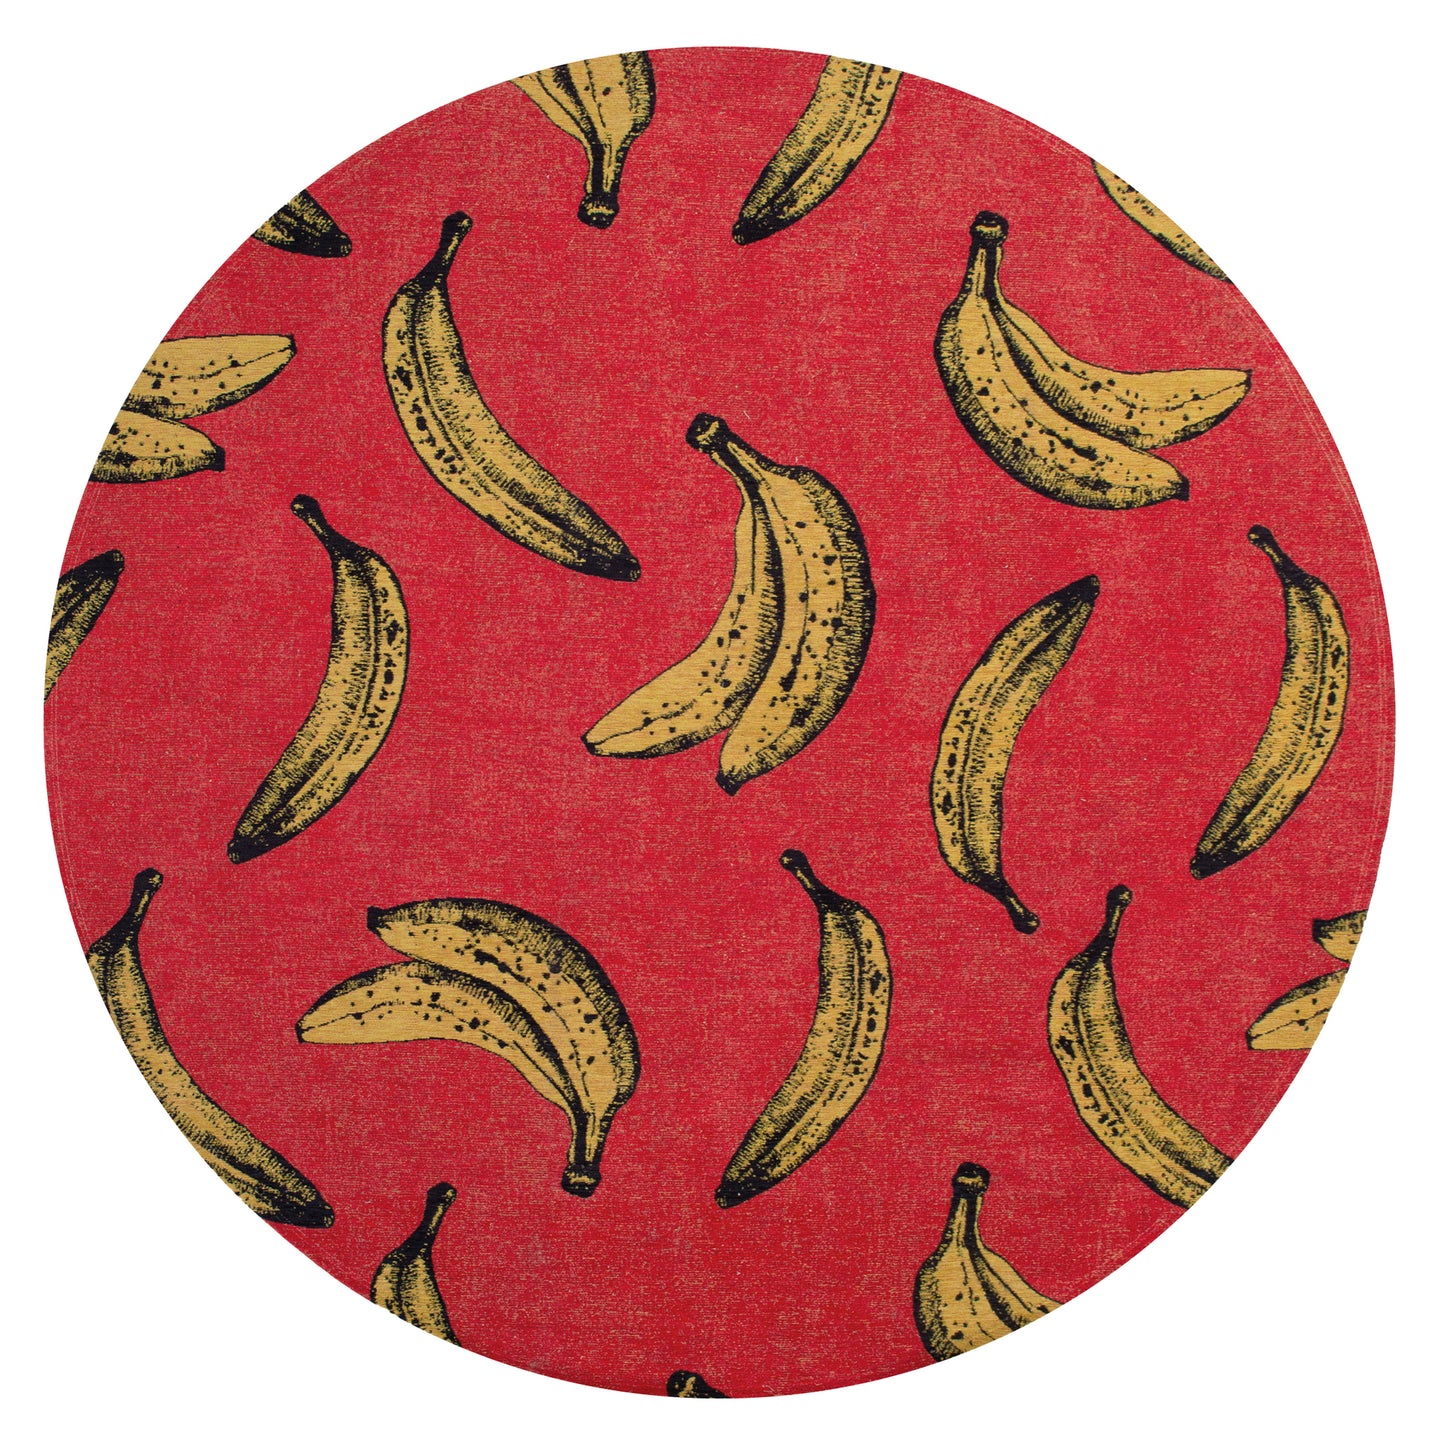 Pop Banana Miami Red 9392